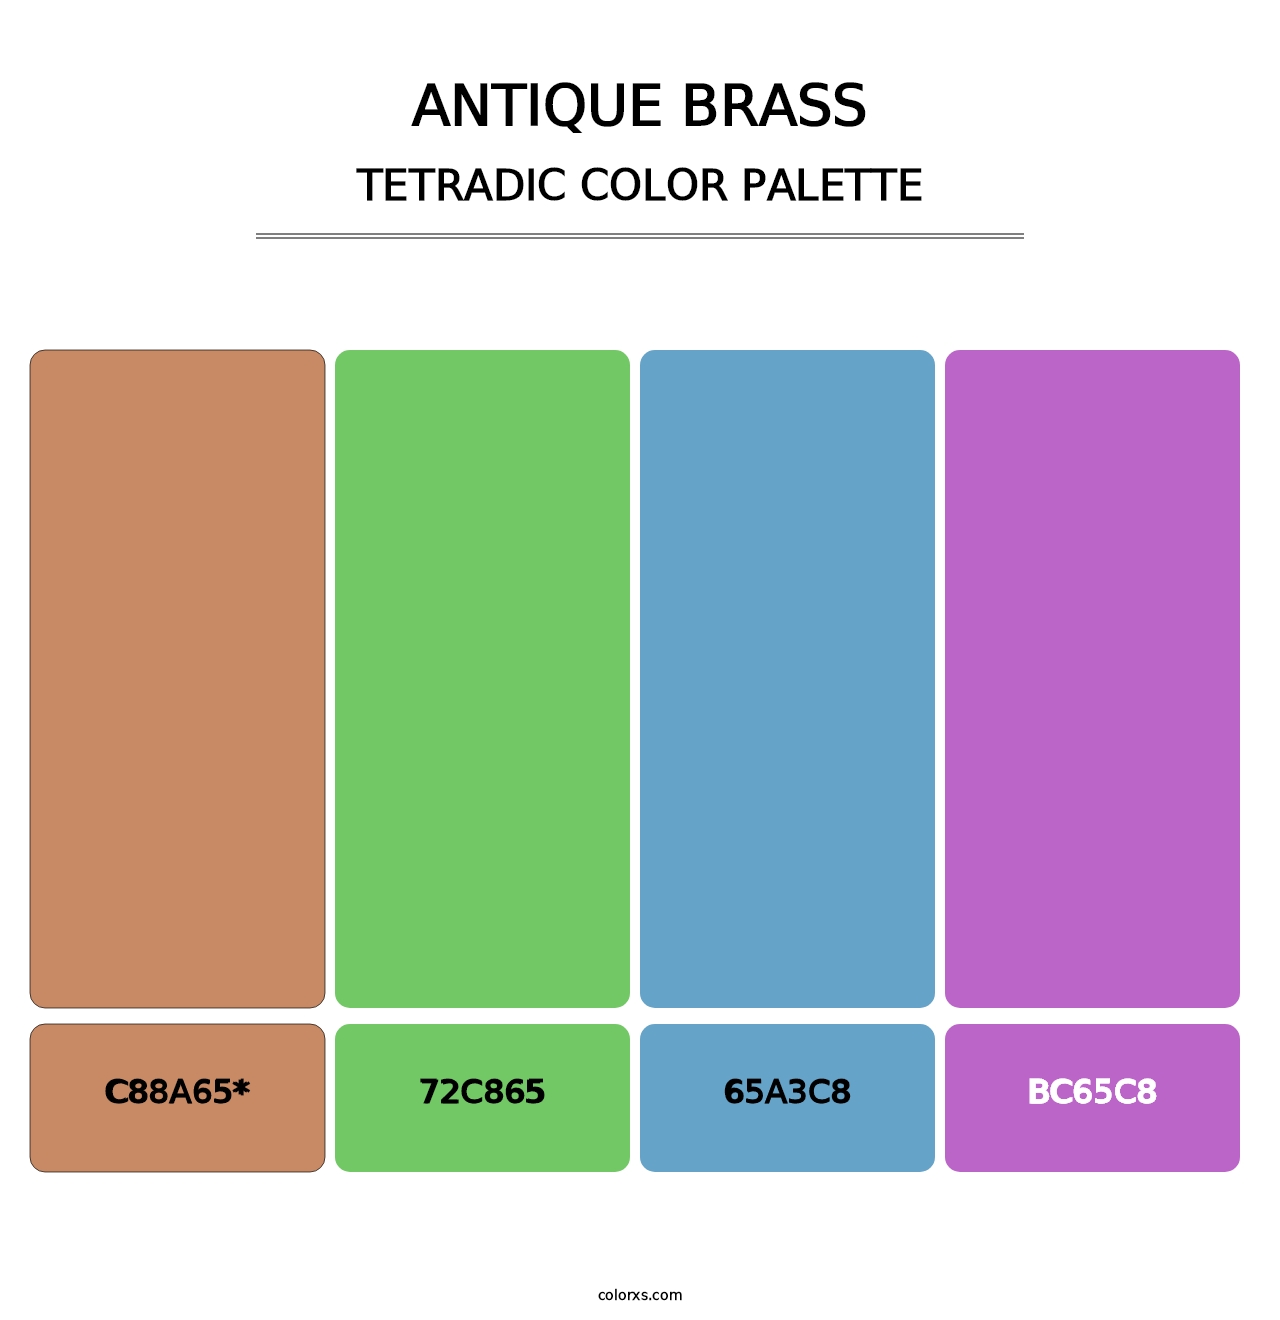 Antique Brass - Tetradic Color Palette